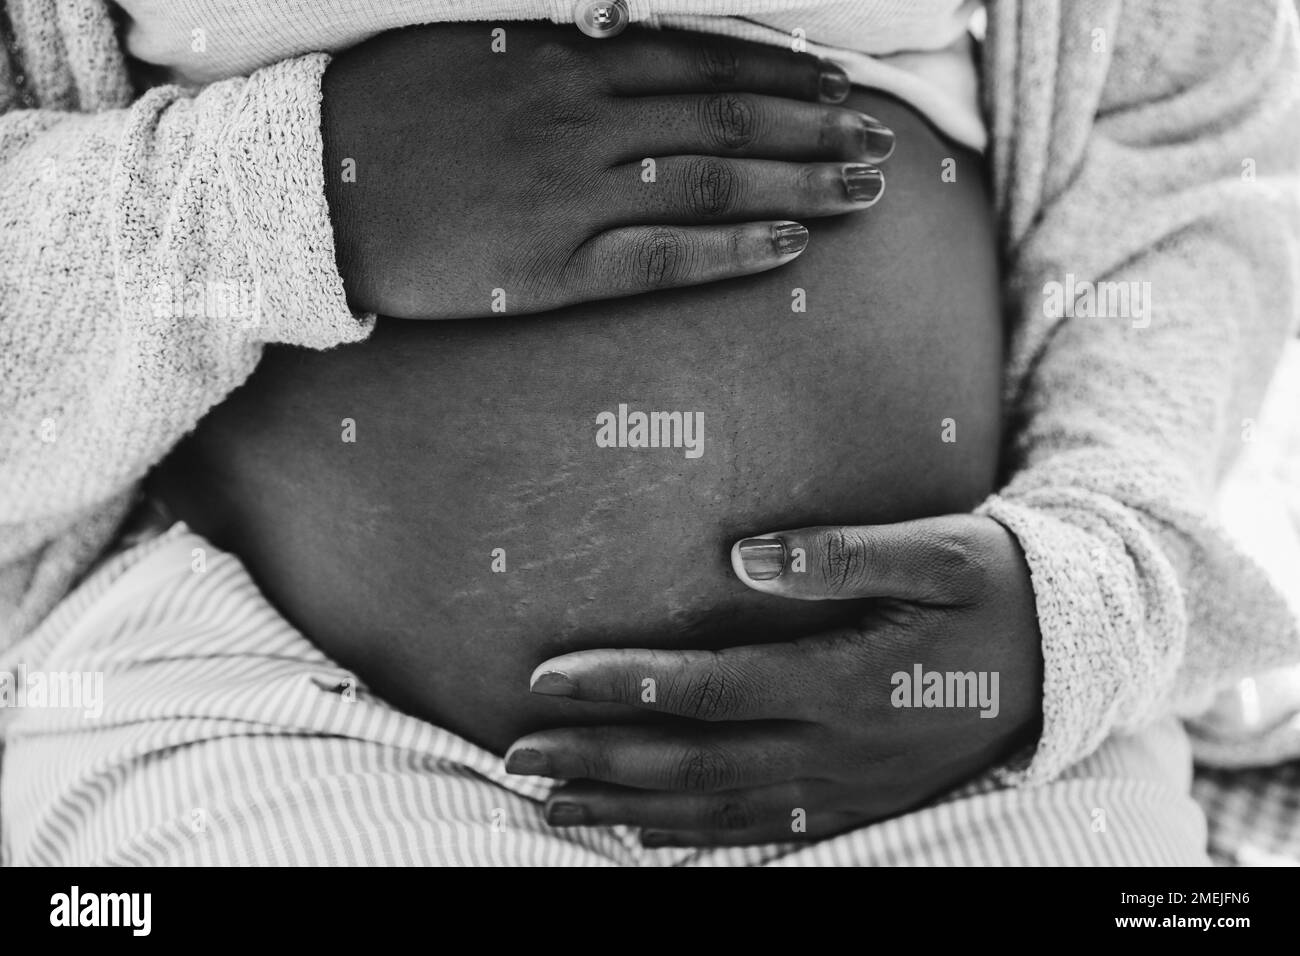 Nahaufnahme einer afrikanischen schwangeren Frau, die ihren Bauch hält - Fokus auf die Hände - Schwarz-Weiß-Schnitt Stockfoto